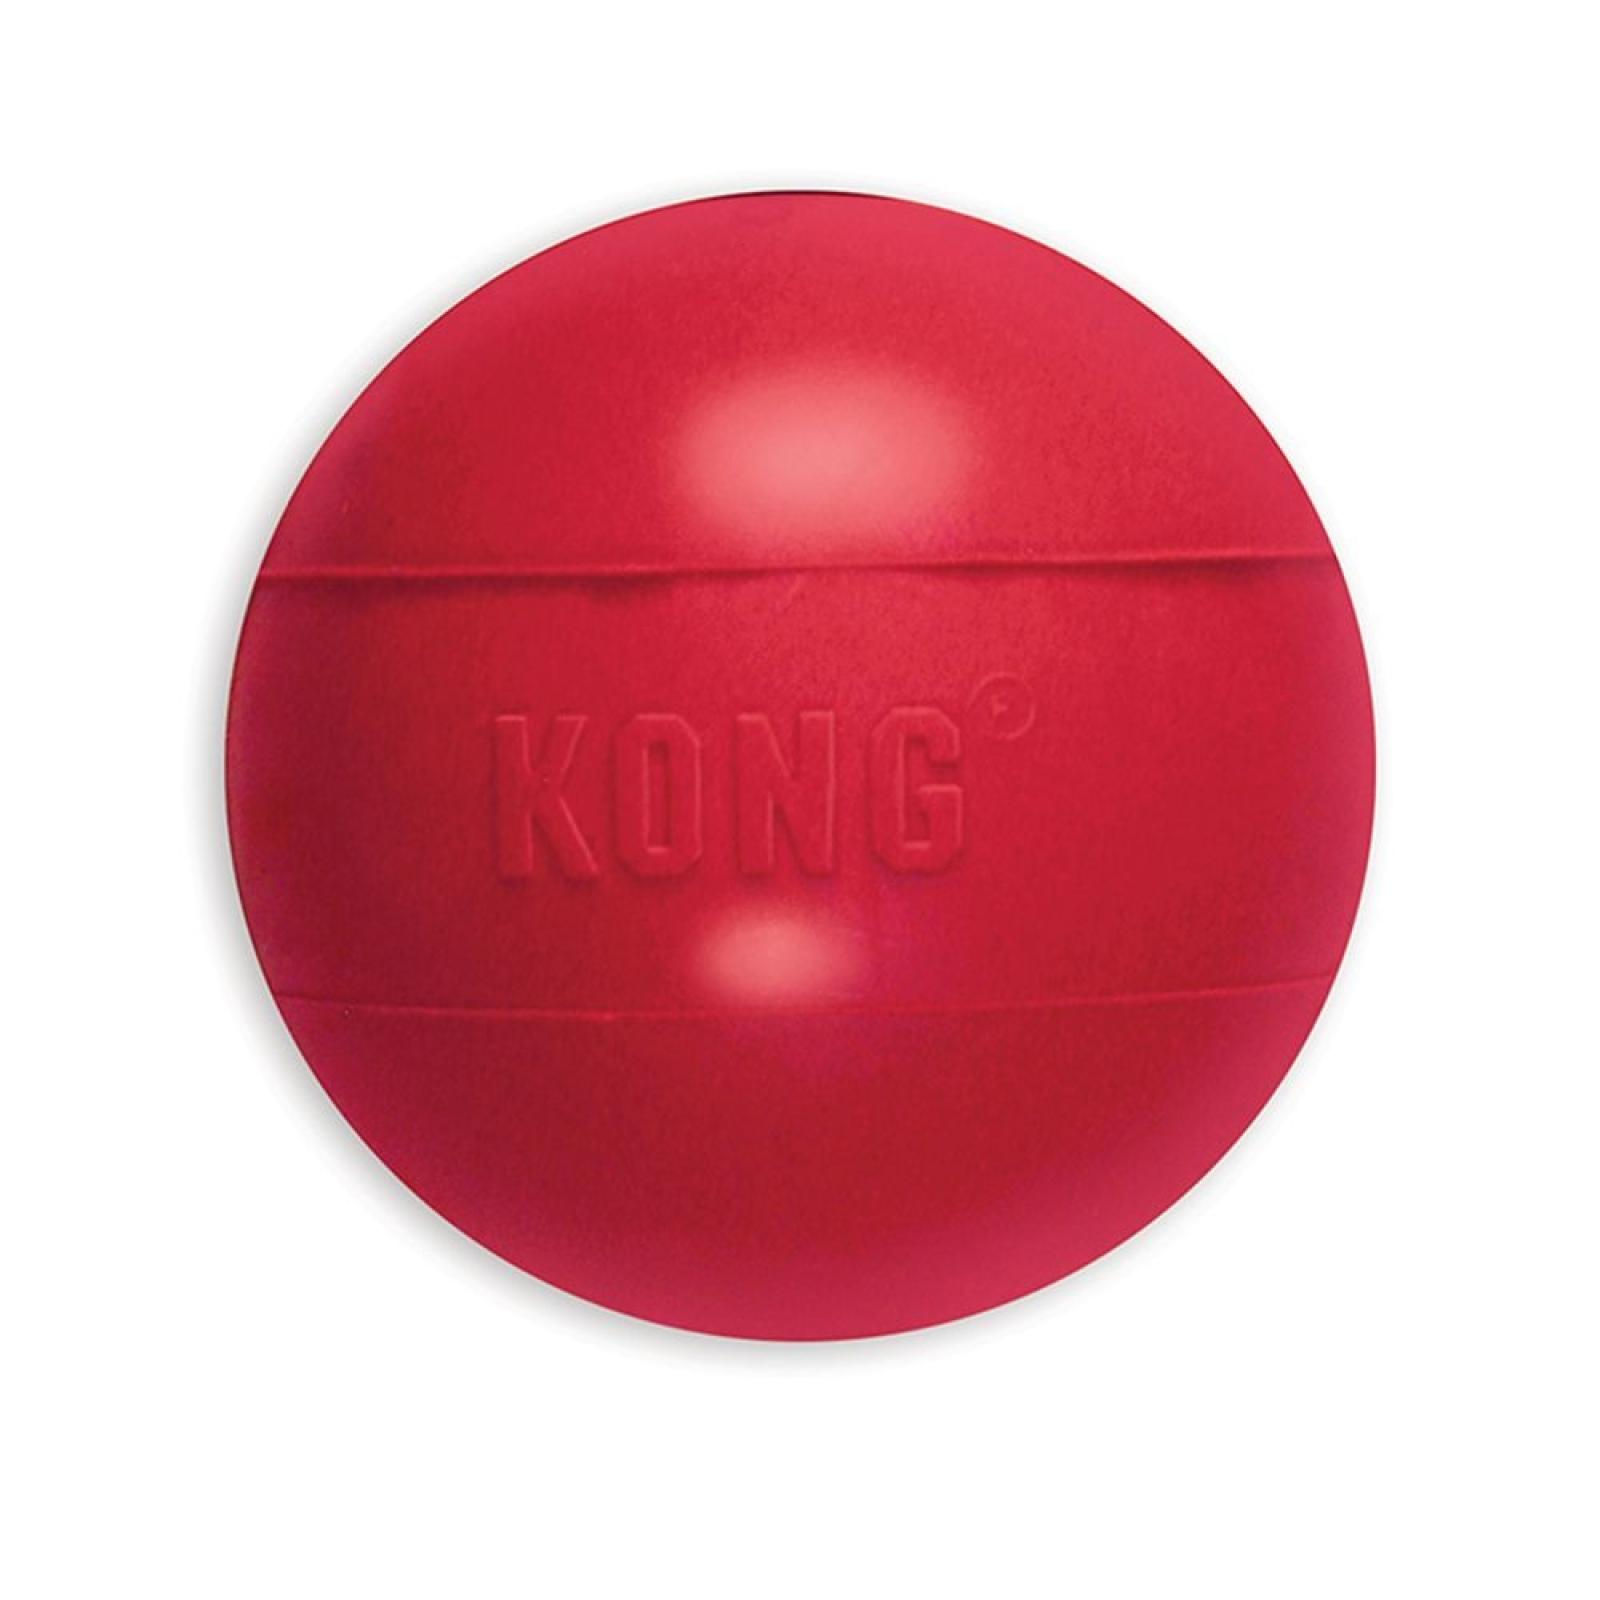 KONG® Ball Dog Toy